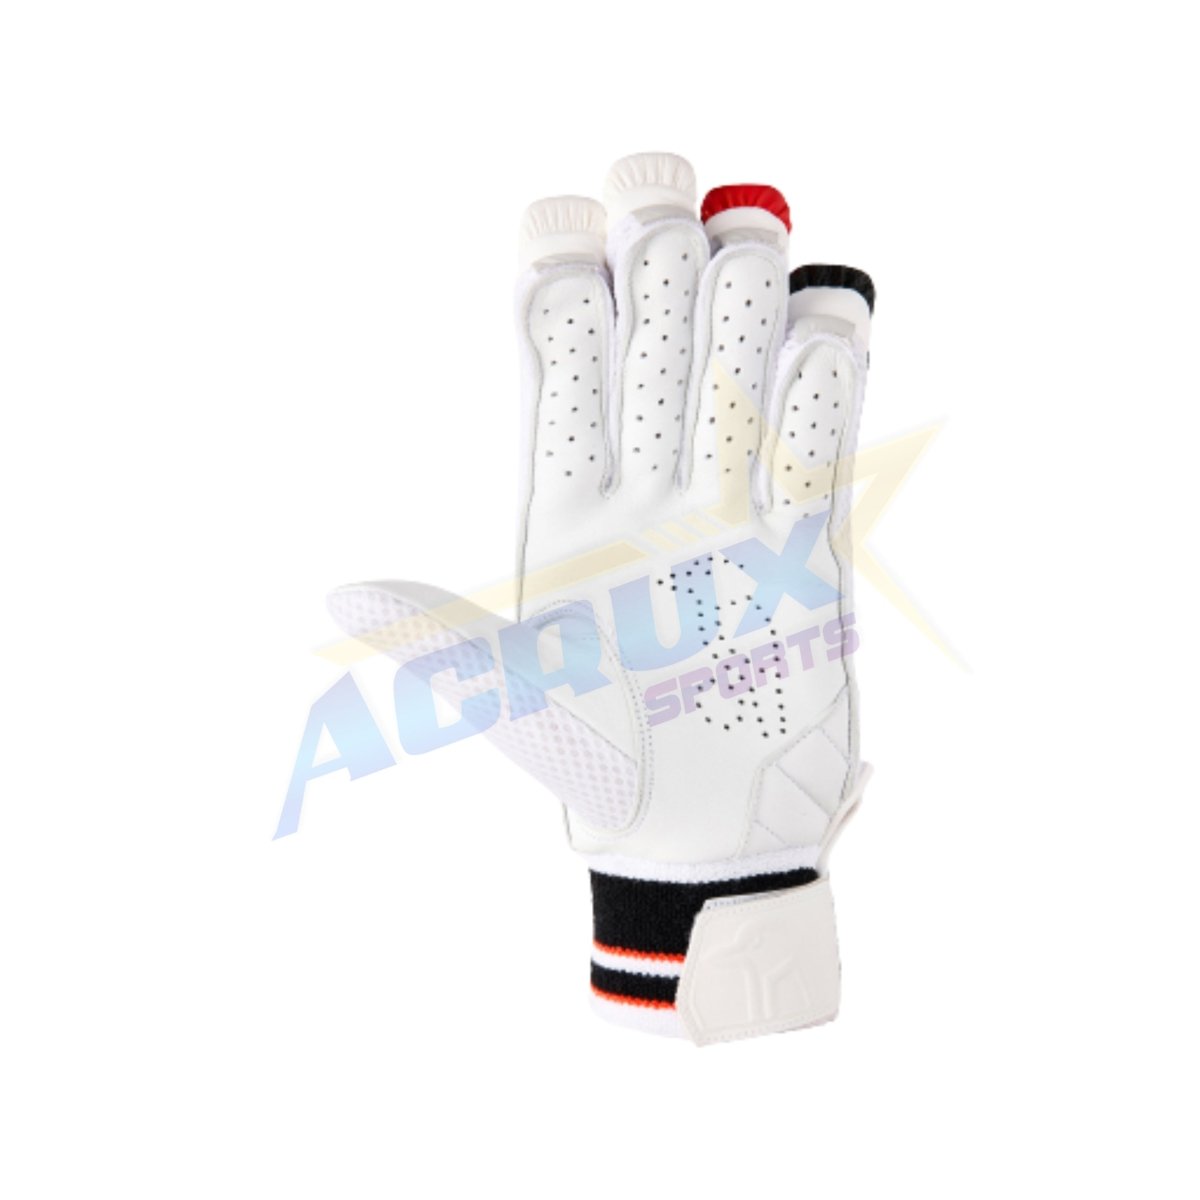 Kookaburra Beast Pro 2.0 Cricket Batting Gloves - Acrux Sports